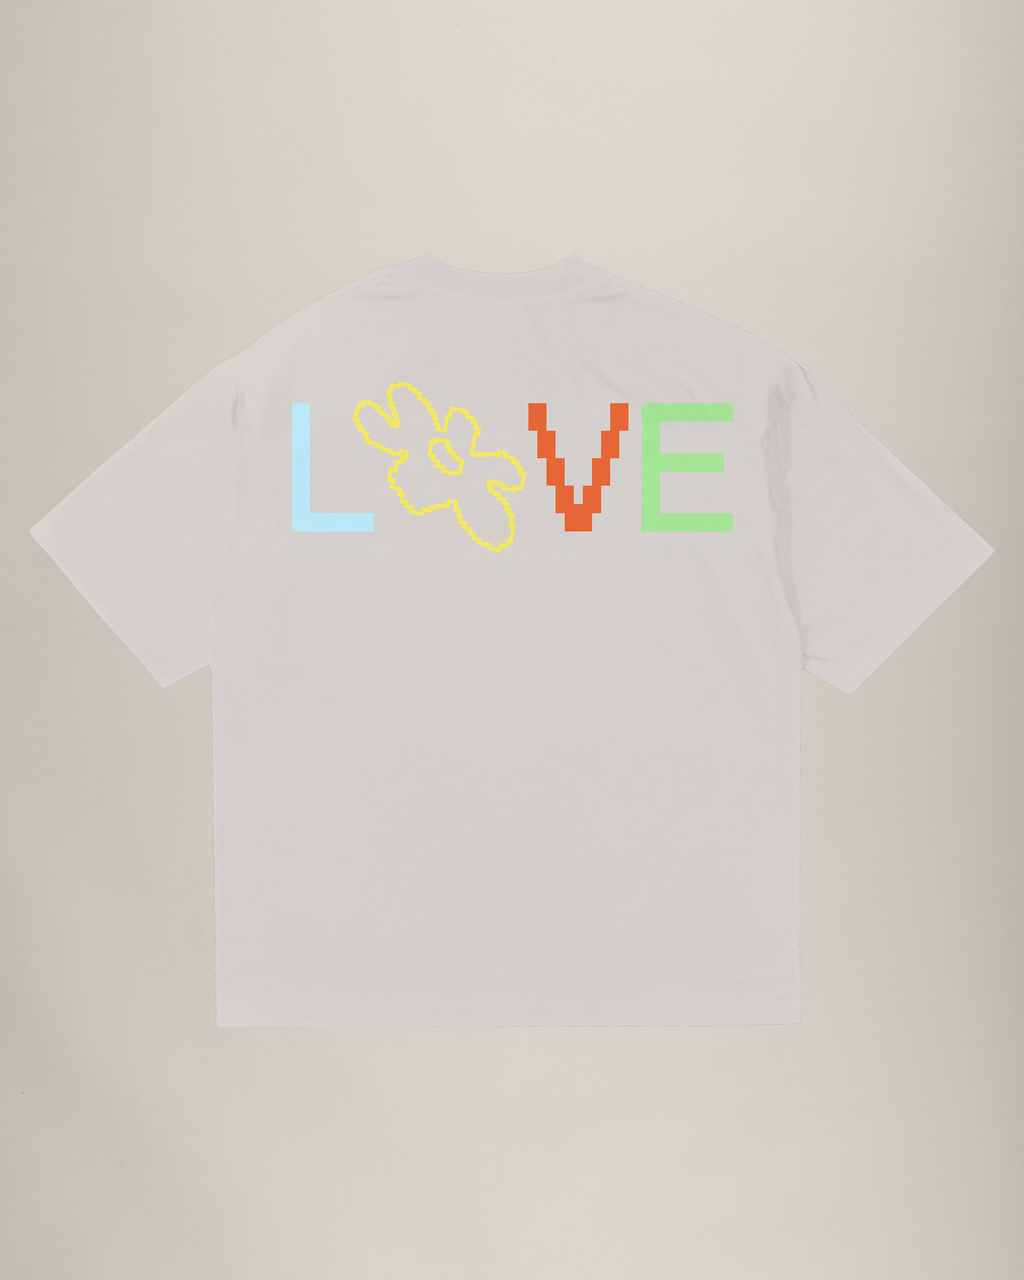 LFP Fan Shirt "Liebe"